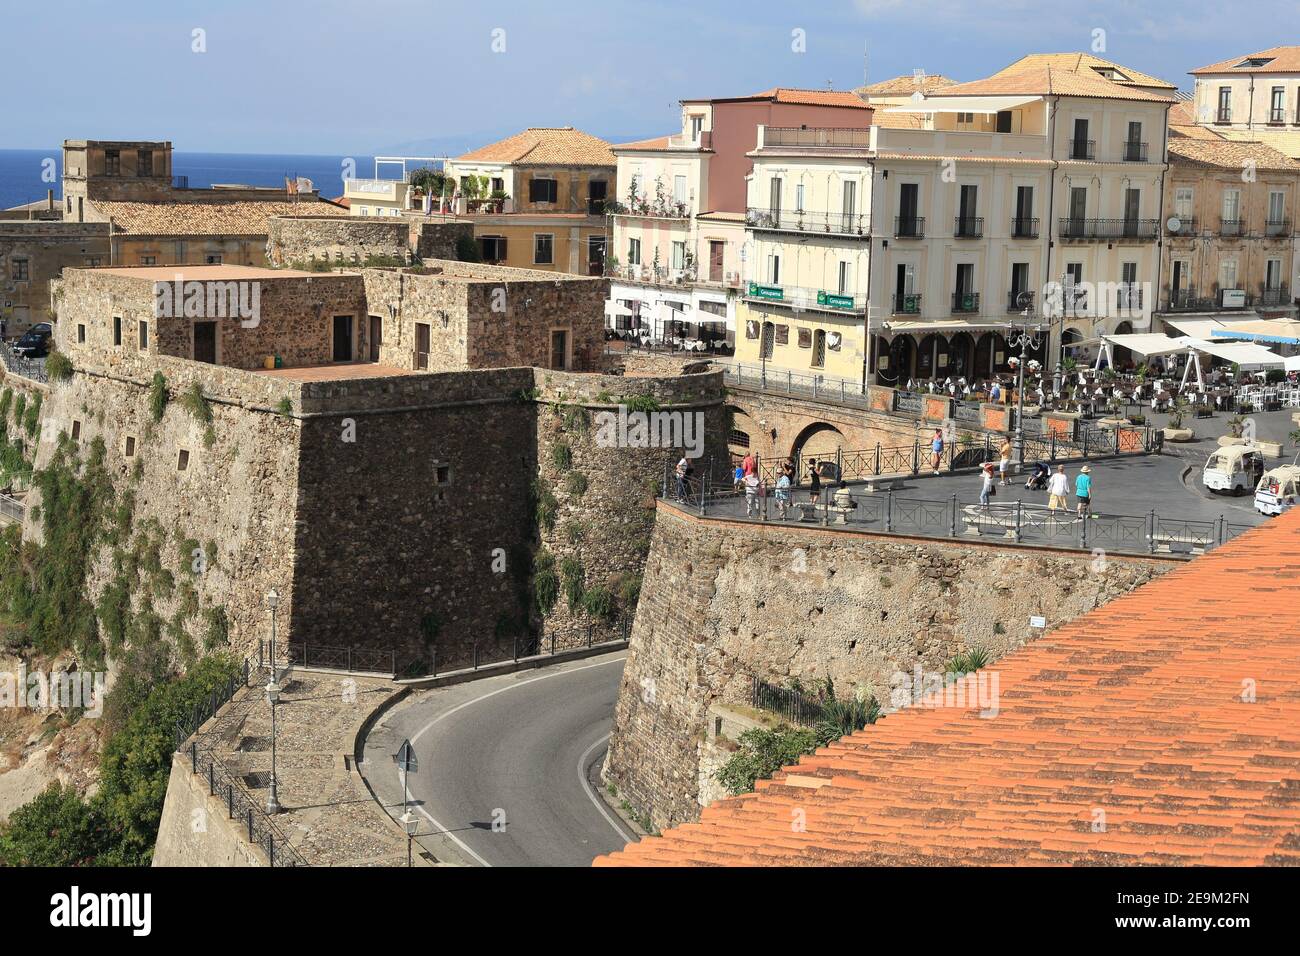 Pizzo une des plus jolies villes de Calabre et son château perché sur une falaise surplombant le golfe de Santa Eufemia, Calabre, Italie Banque D'Images